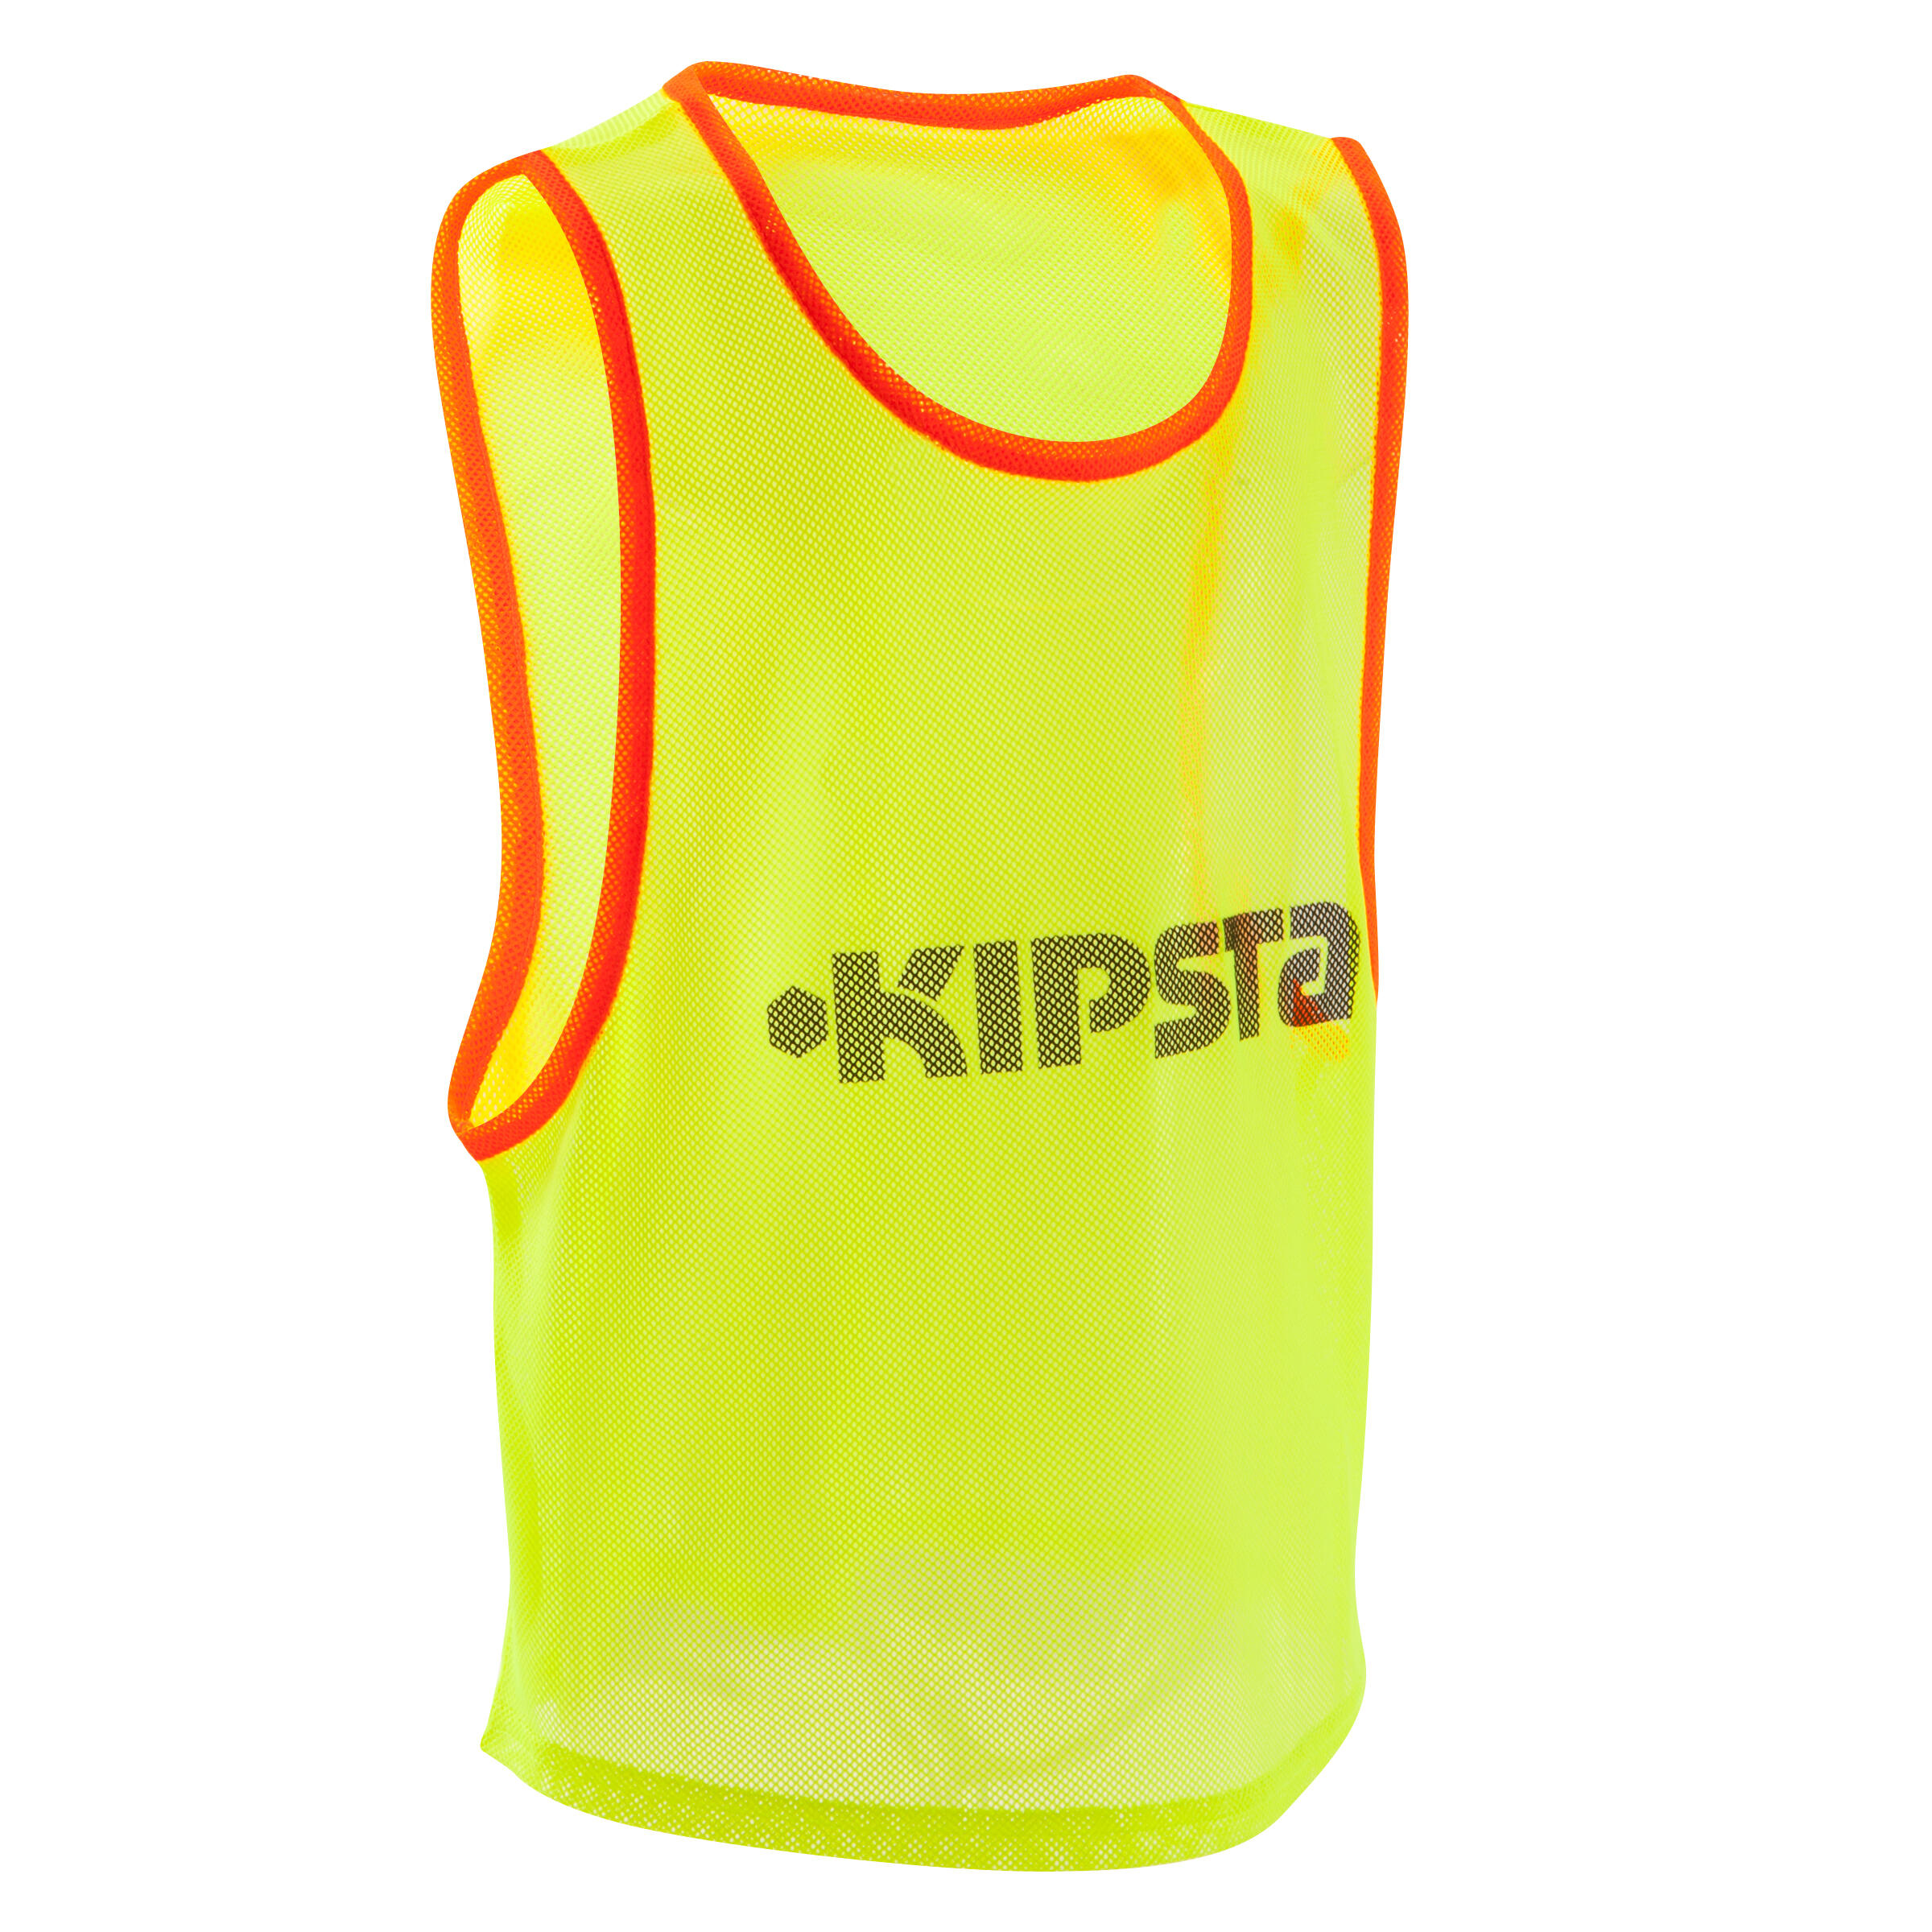 KIPSTA Kids' Team Sports Bib - Yellow